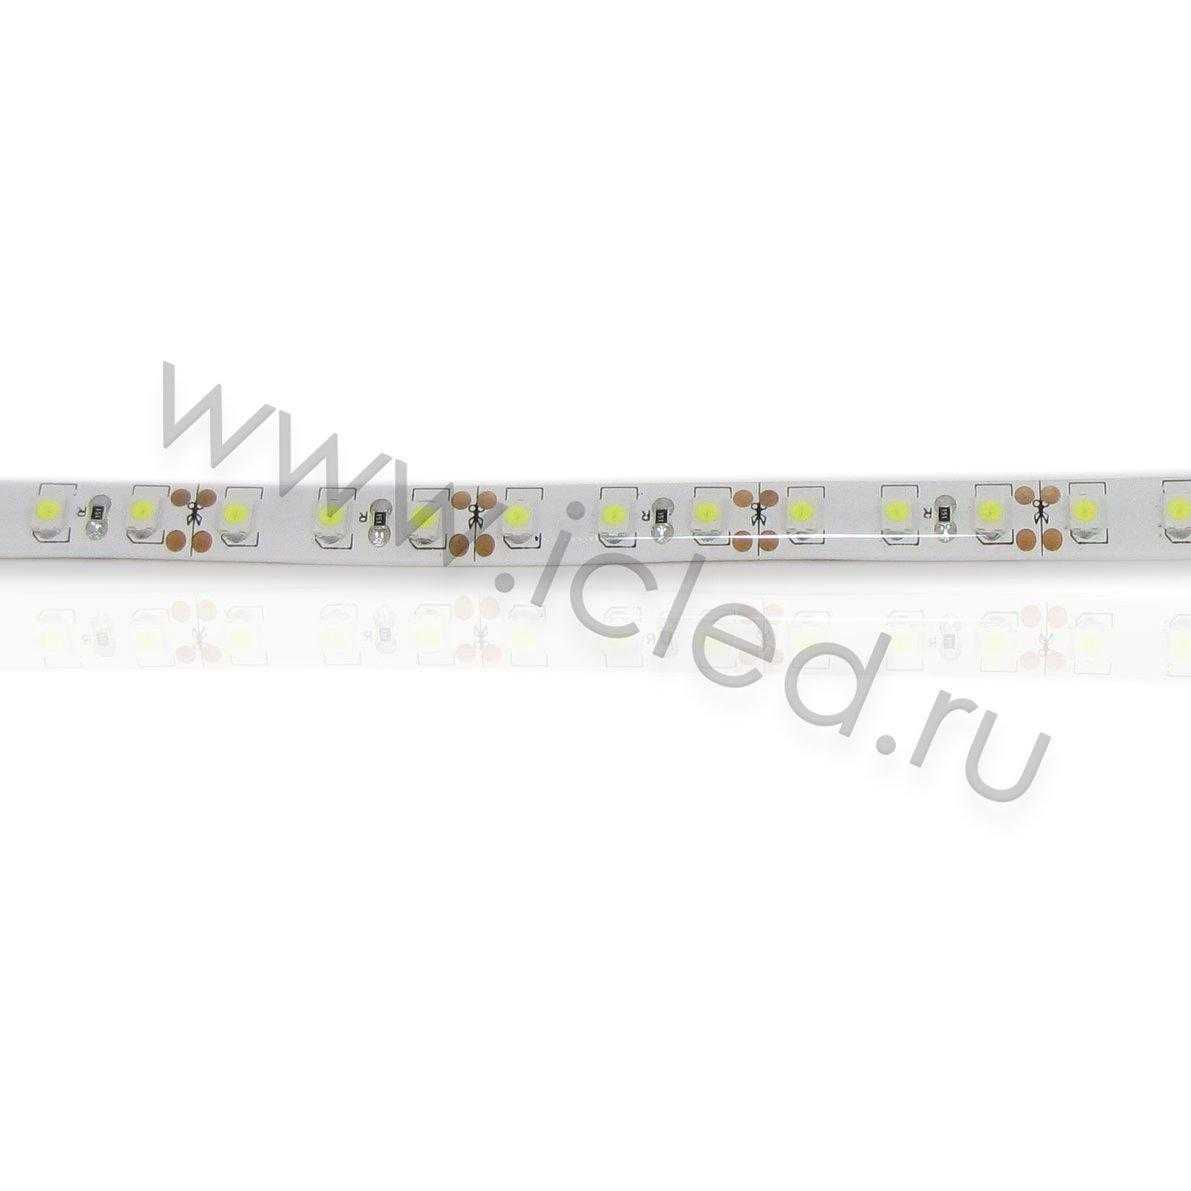 Влагозащищенные светодиодные ленты Светодиодная лента Standart class, 3528, 120led/m, White, 12V, IP65 Icled